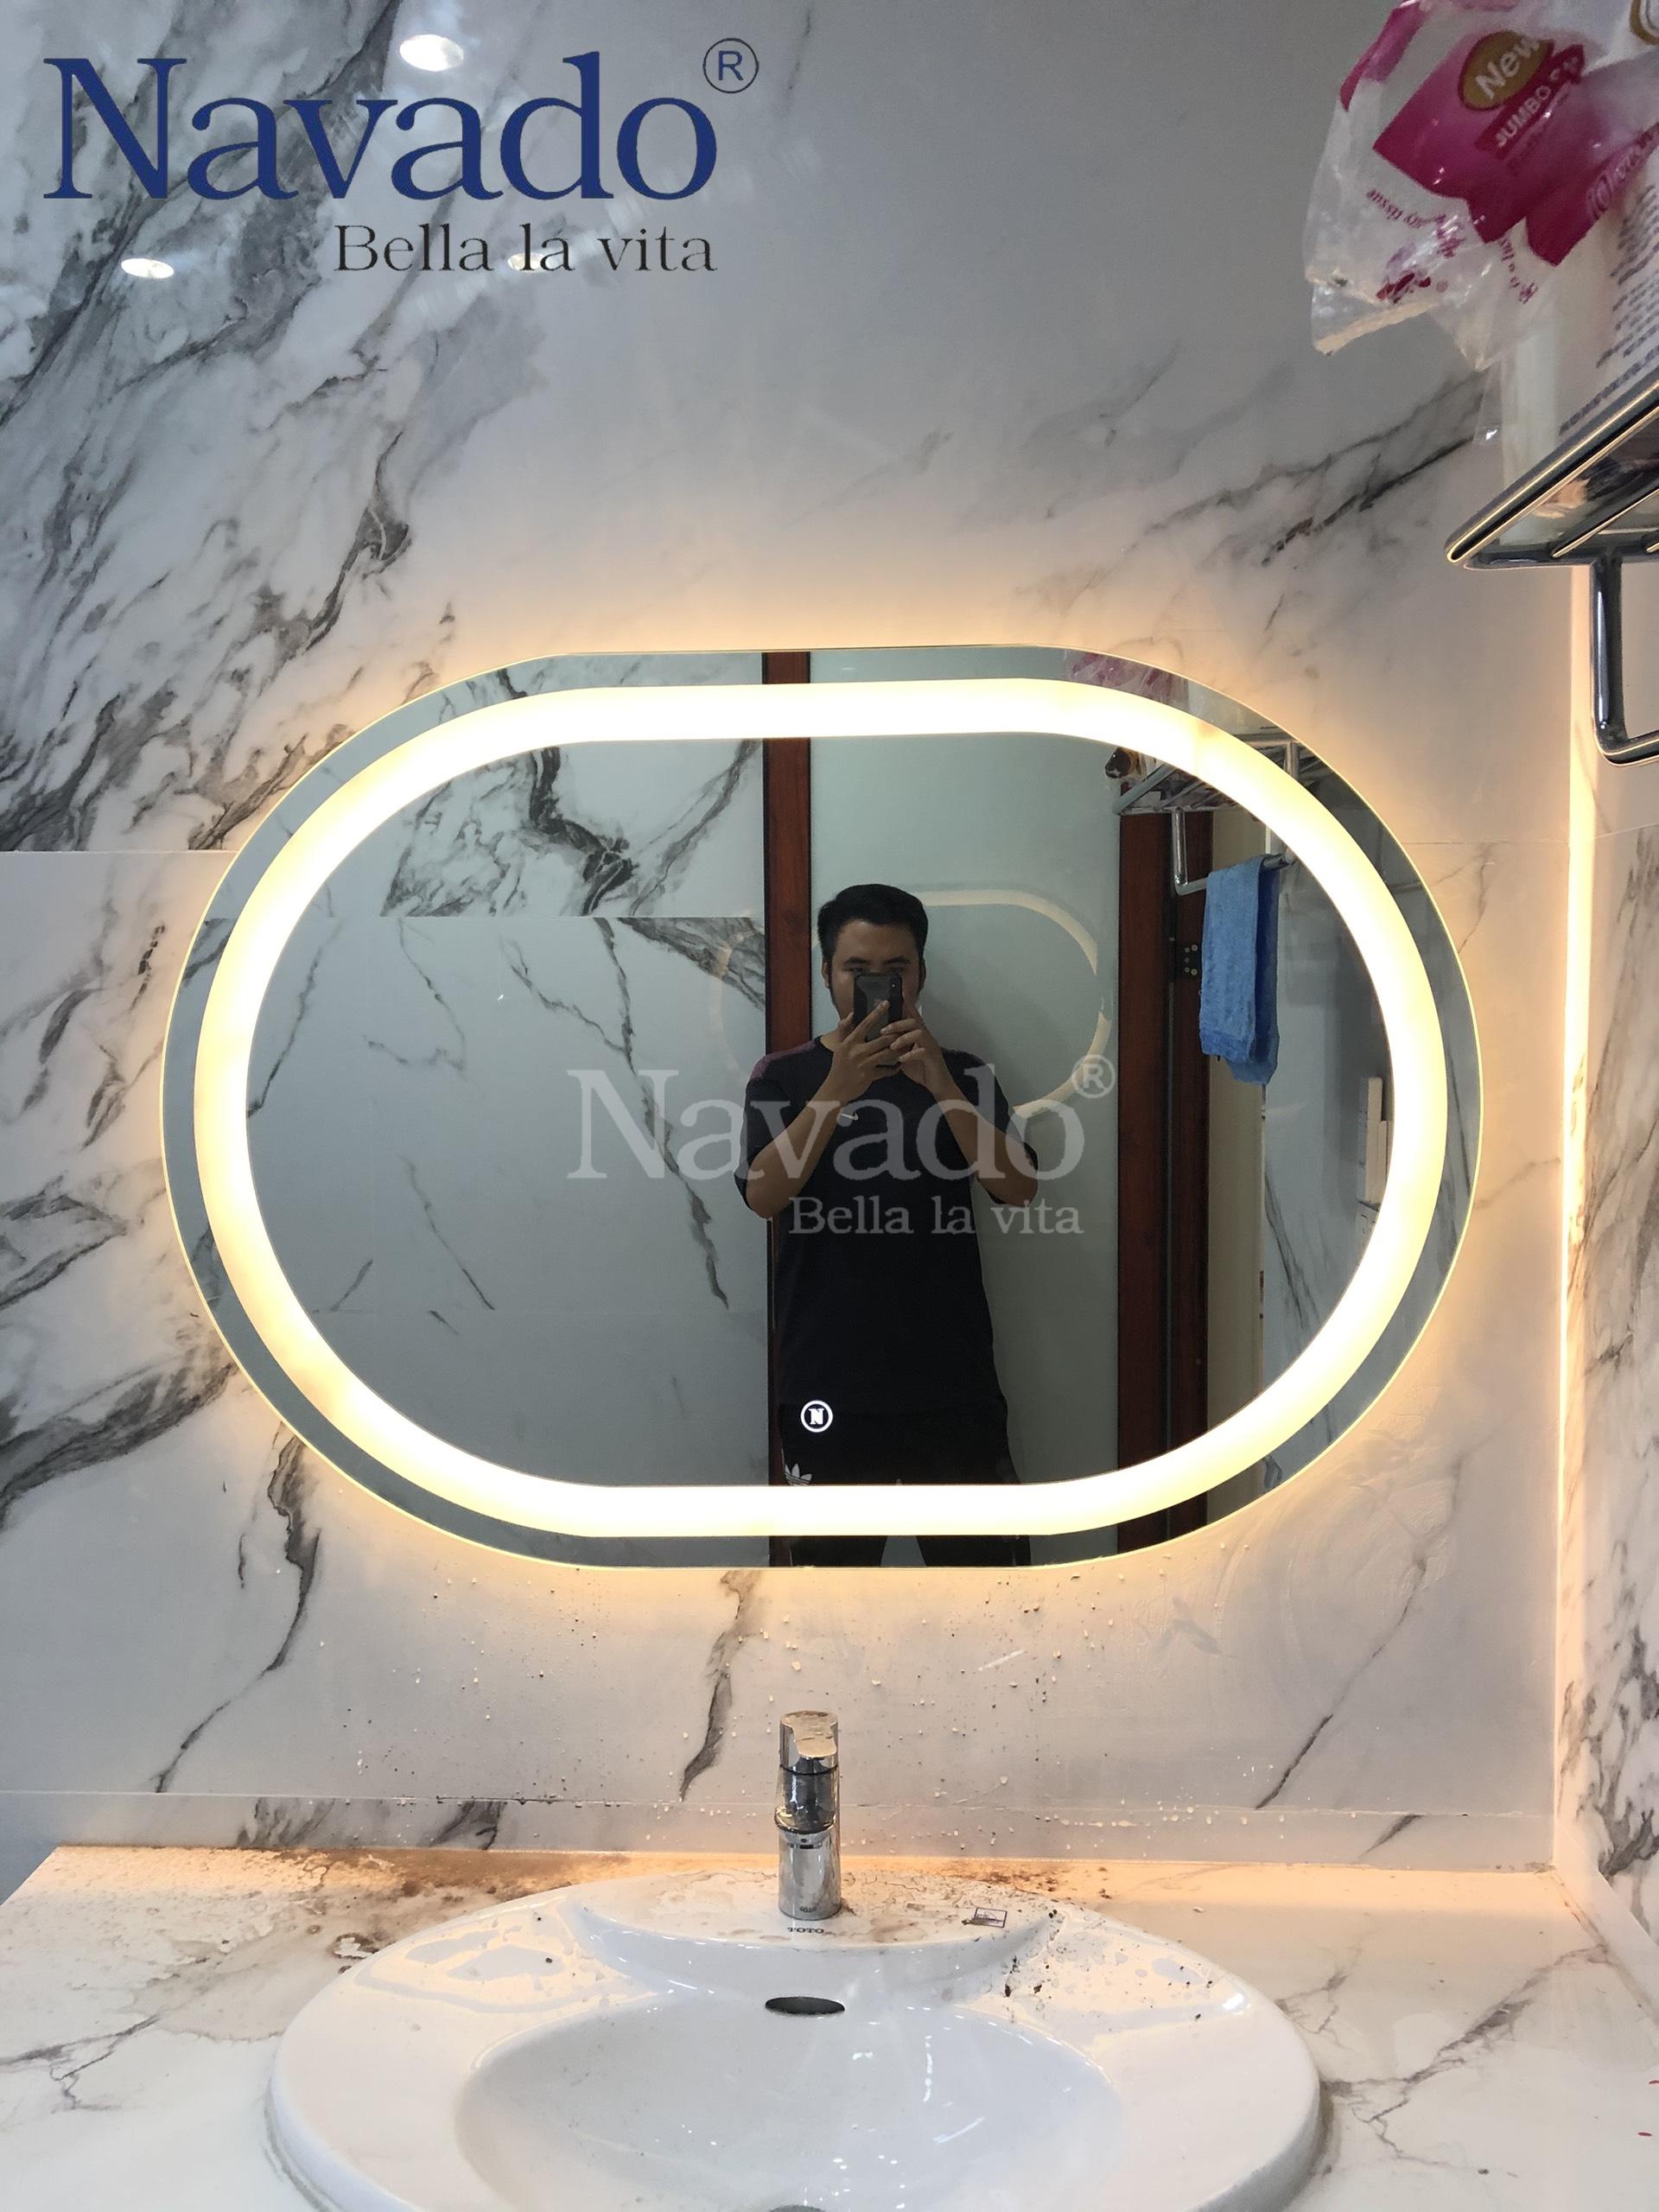 Gương cao cấp Bắc Ninh Navado: Navado hân hạnh giới thiệu đến các bạn chiếc gương cao cấp Bắc Ninh - một sản phẩm được thiết kế đặc biệt để phục vụ cho các nhu cầu trang trí của người Việt. Với chất lượng tuyệt vời và kiểu dáng đẹp mắt, Navado tin rằng đây sẽ là món quà ý nghĩa và đáng giá dành cho bạn và người thân yêu.